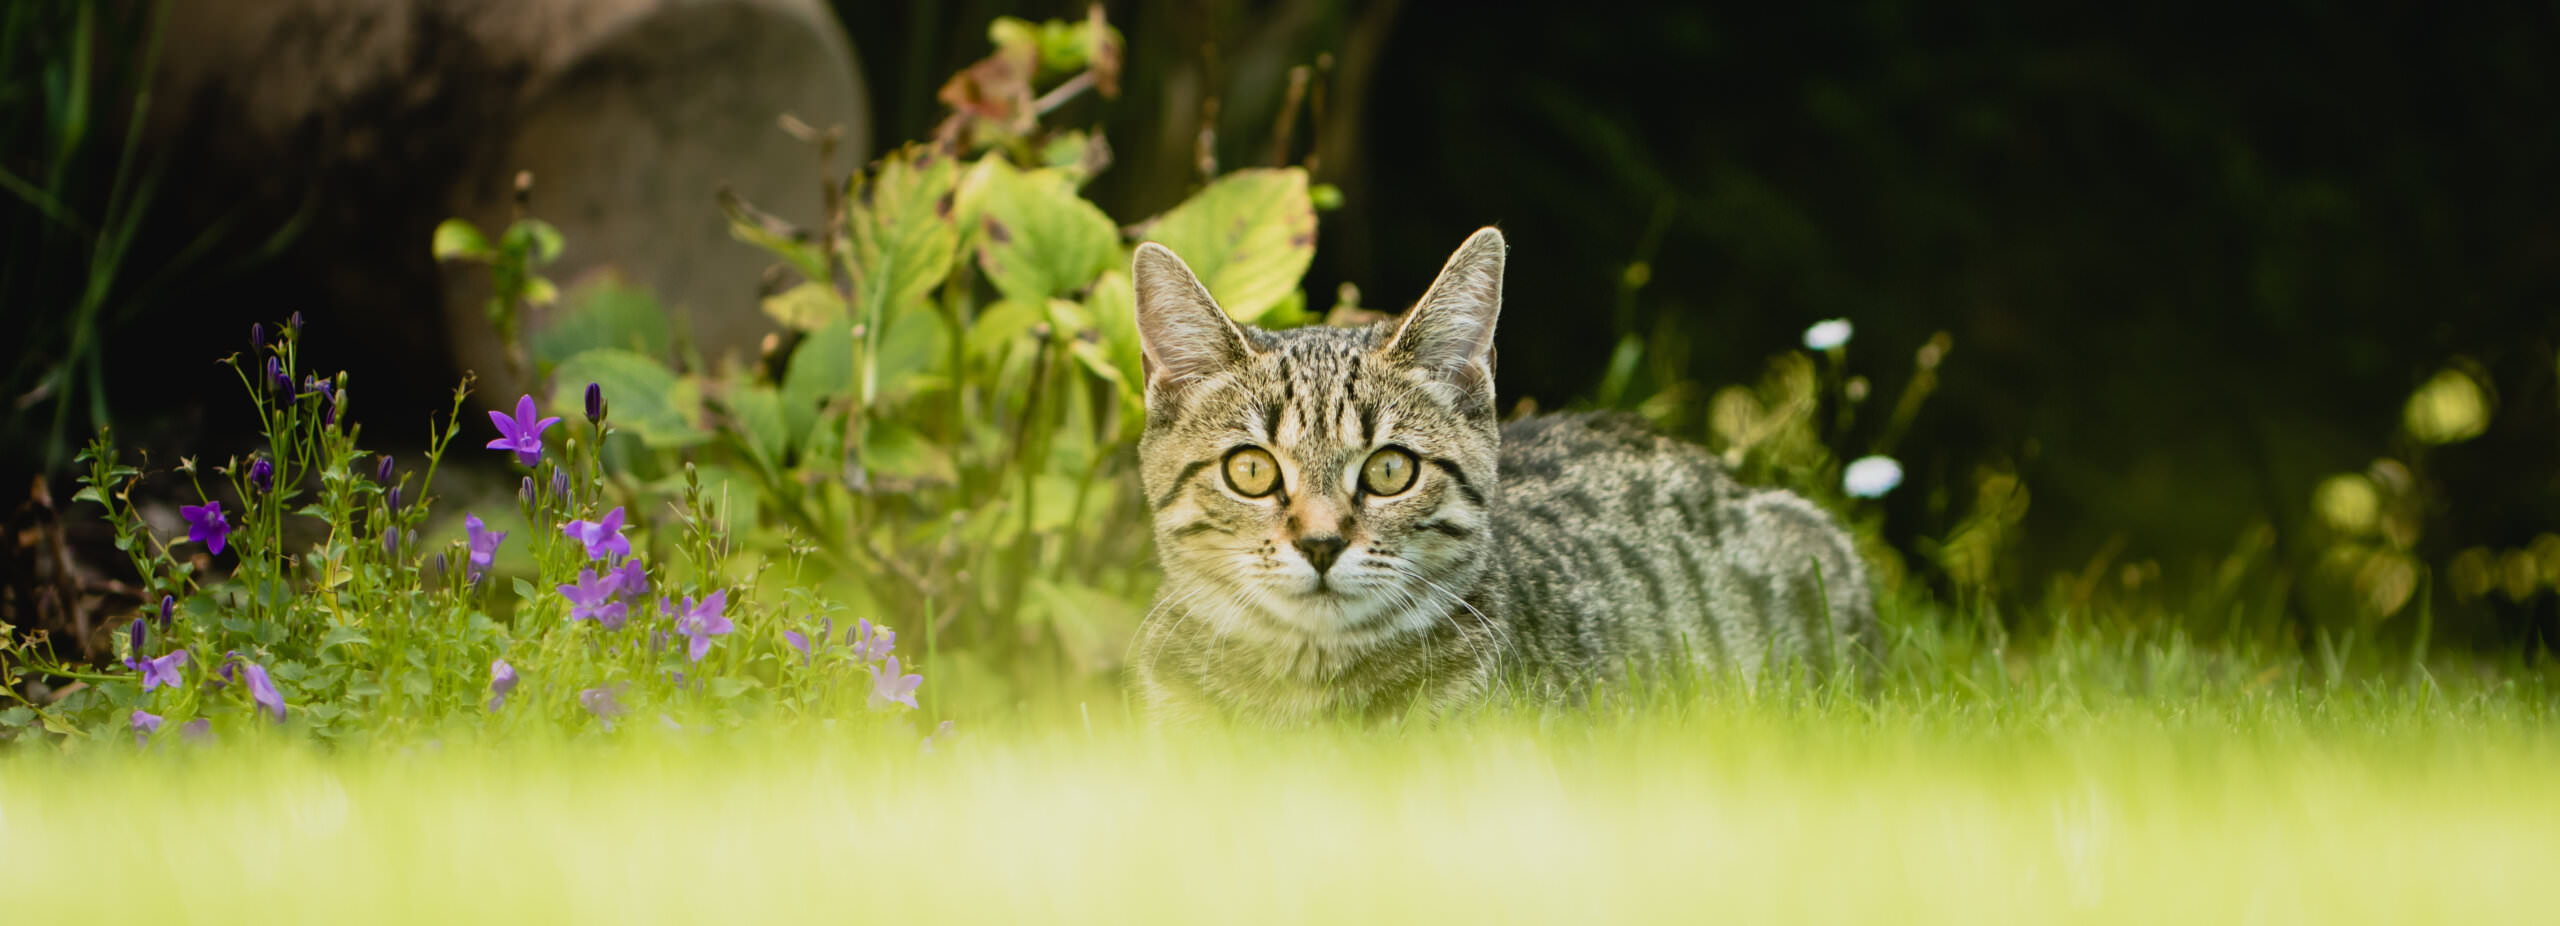 Nachbars Katze im Gemüsebeet – wie kann man das verhindern? - Samenhaus  Gartenblog